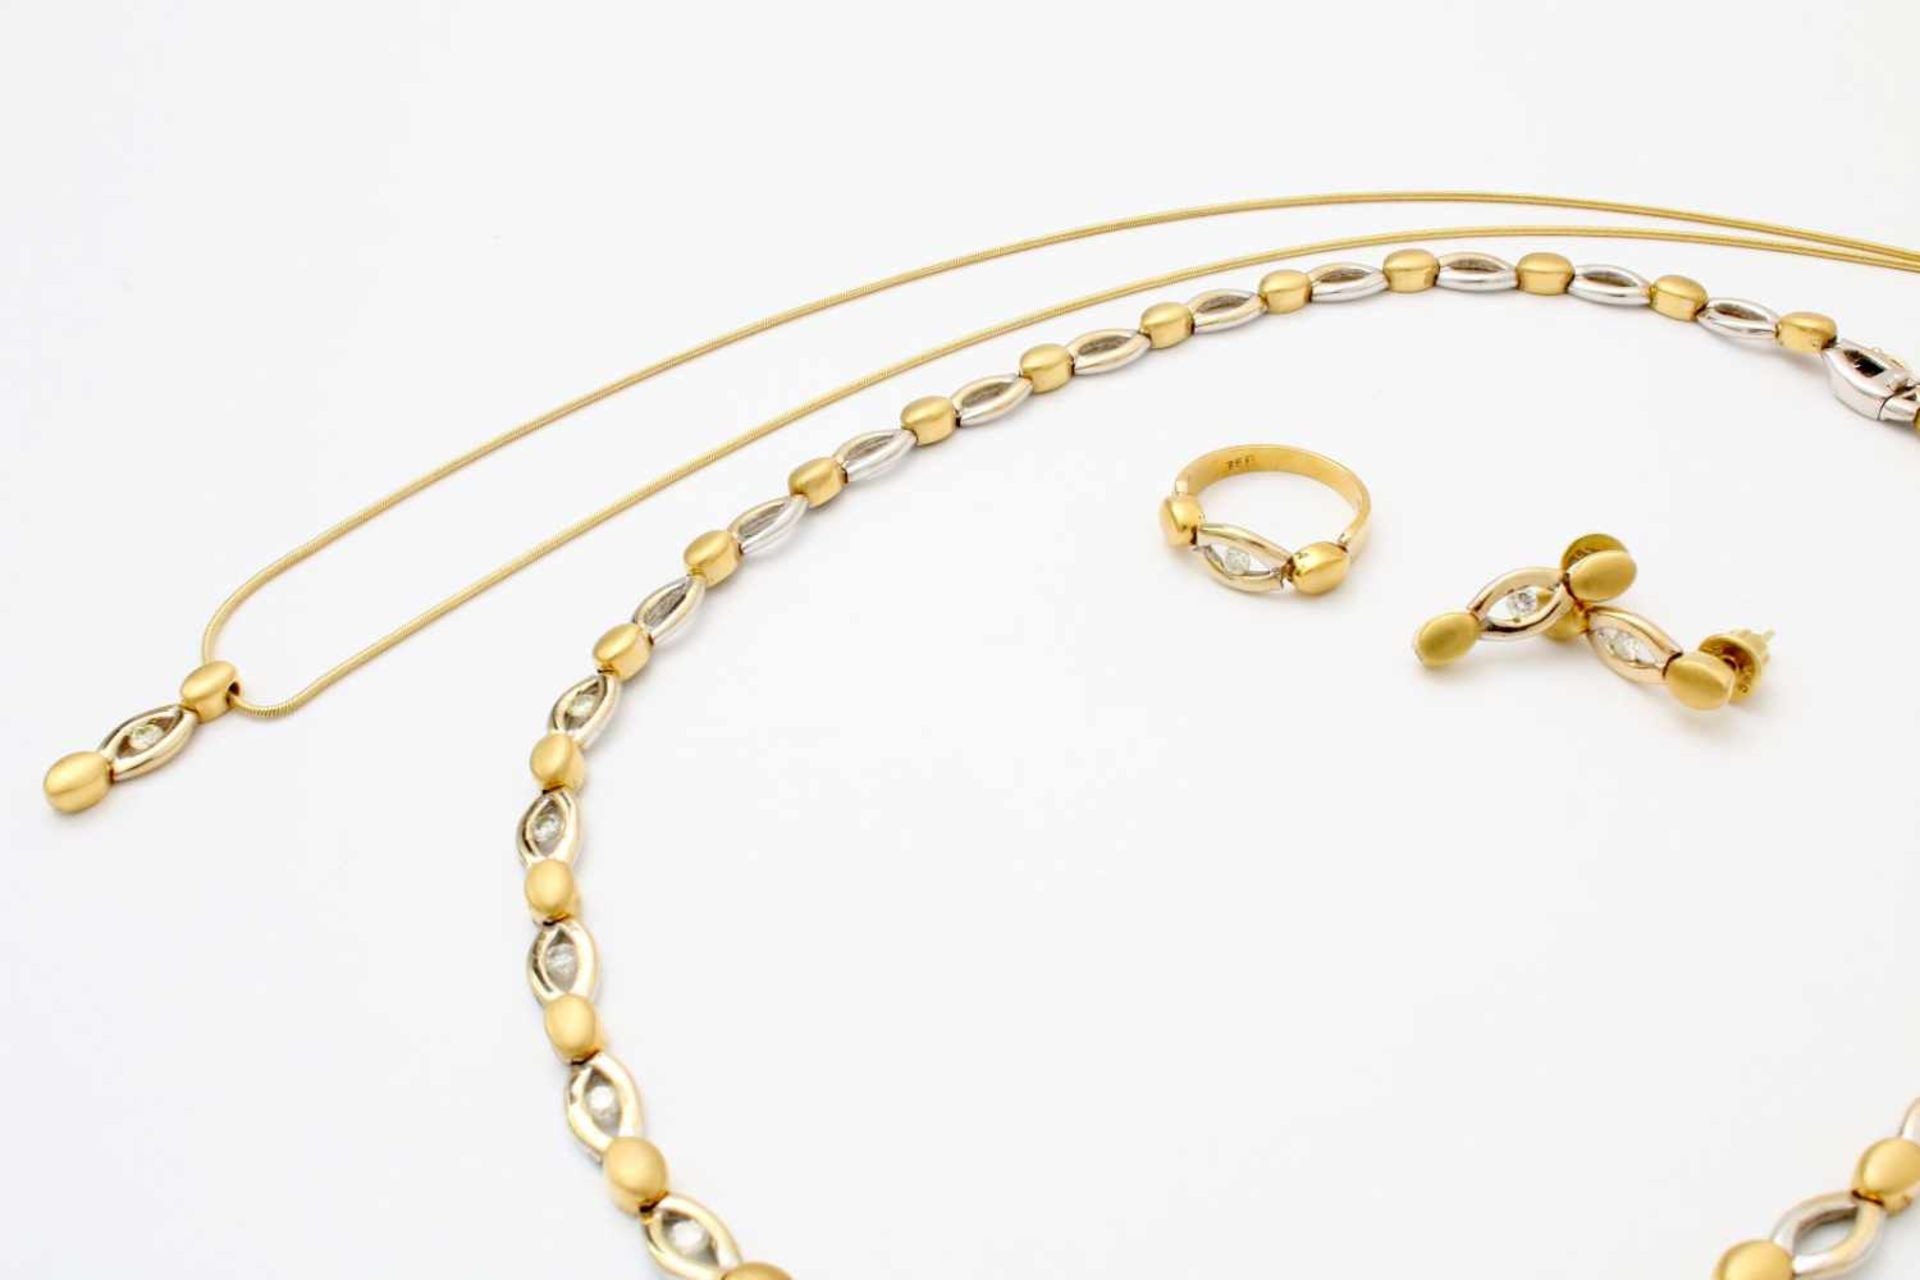 Gelbgold / Weißgold Schmuckset mit Brillanten - Collier, Halskette, Ohrringe, Ring GG / WG 750, - Image 2 of 4